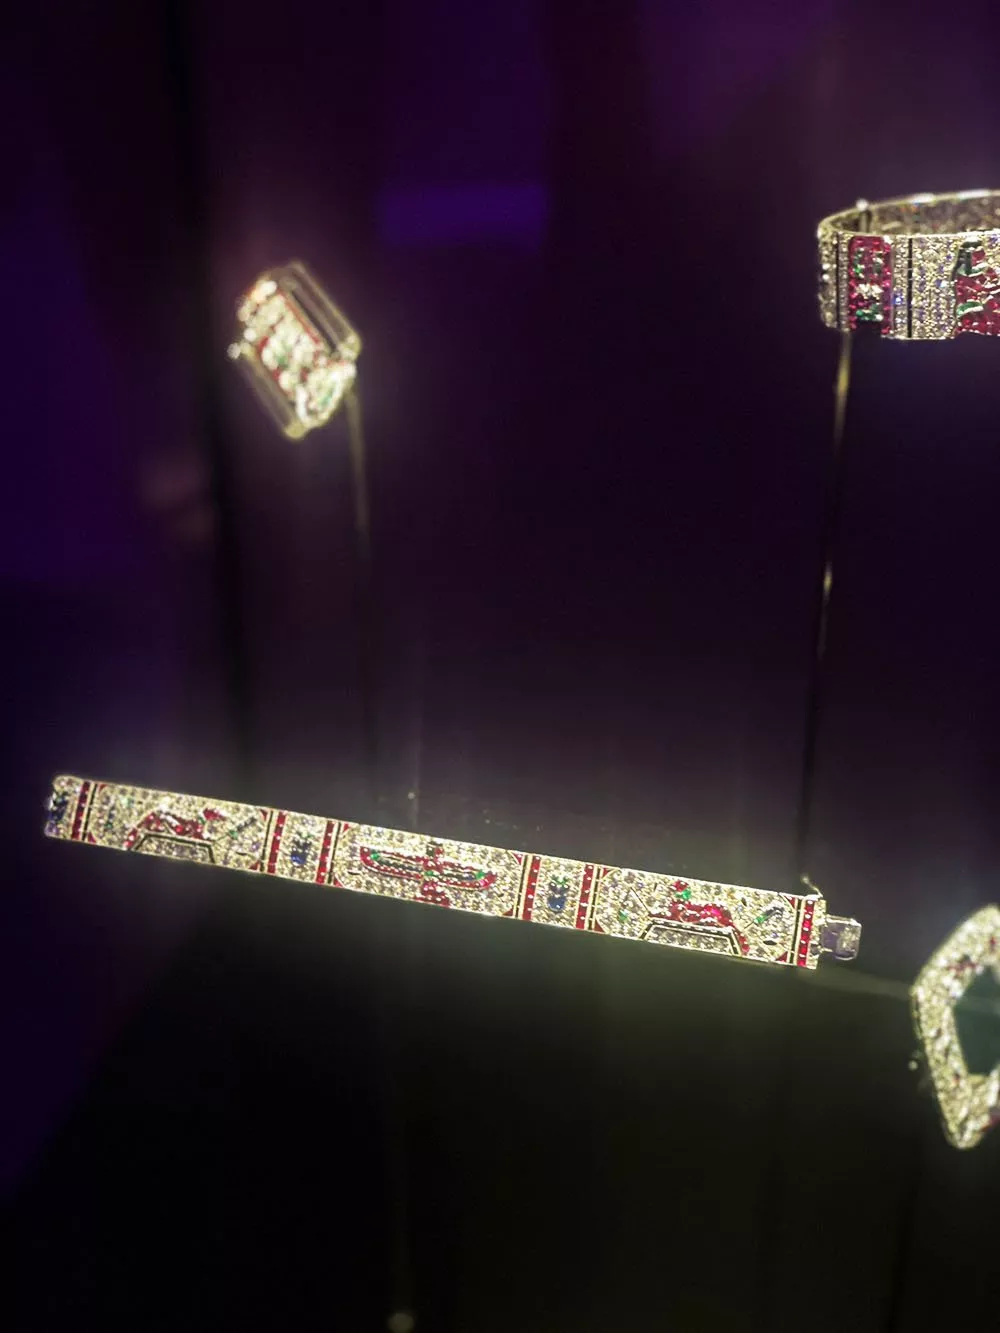 مجوهرات فان كليف اند آربلز تضيء السعودية في معرض الزمن، الطبيعة، الحب